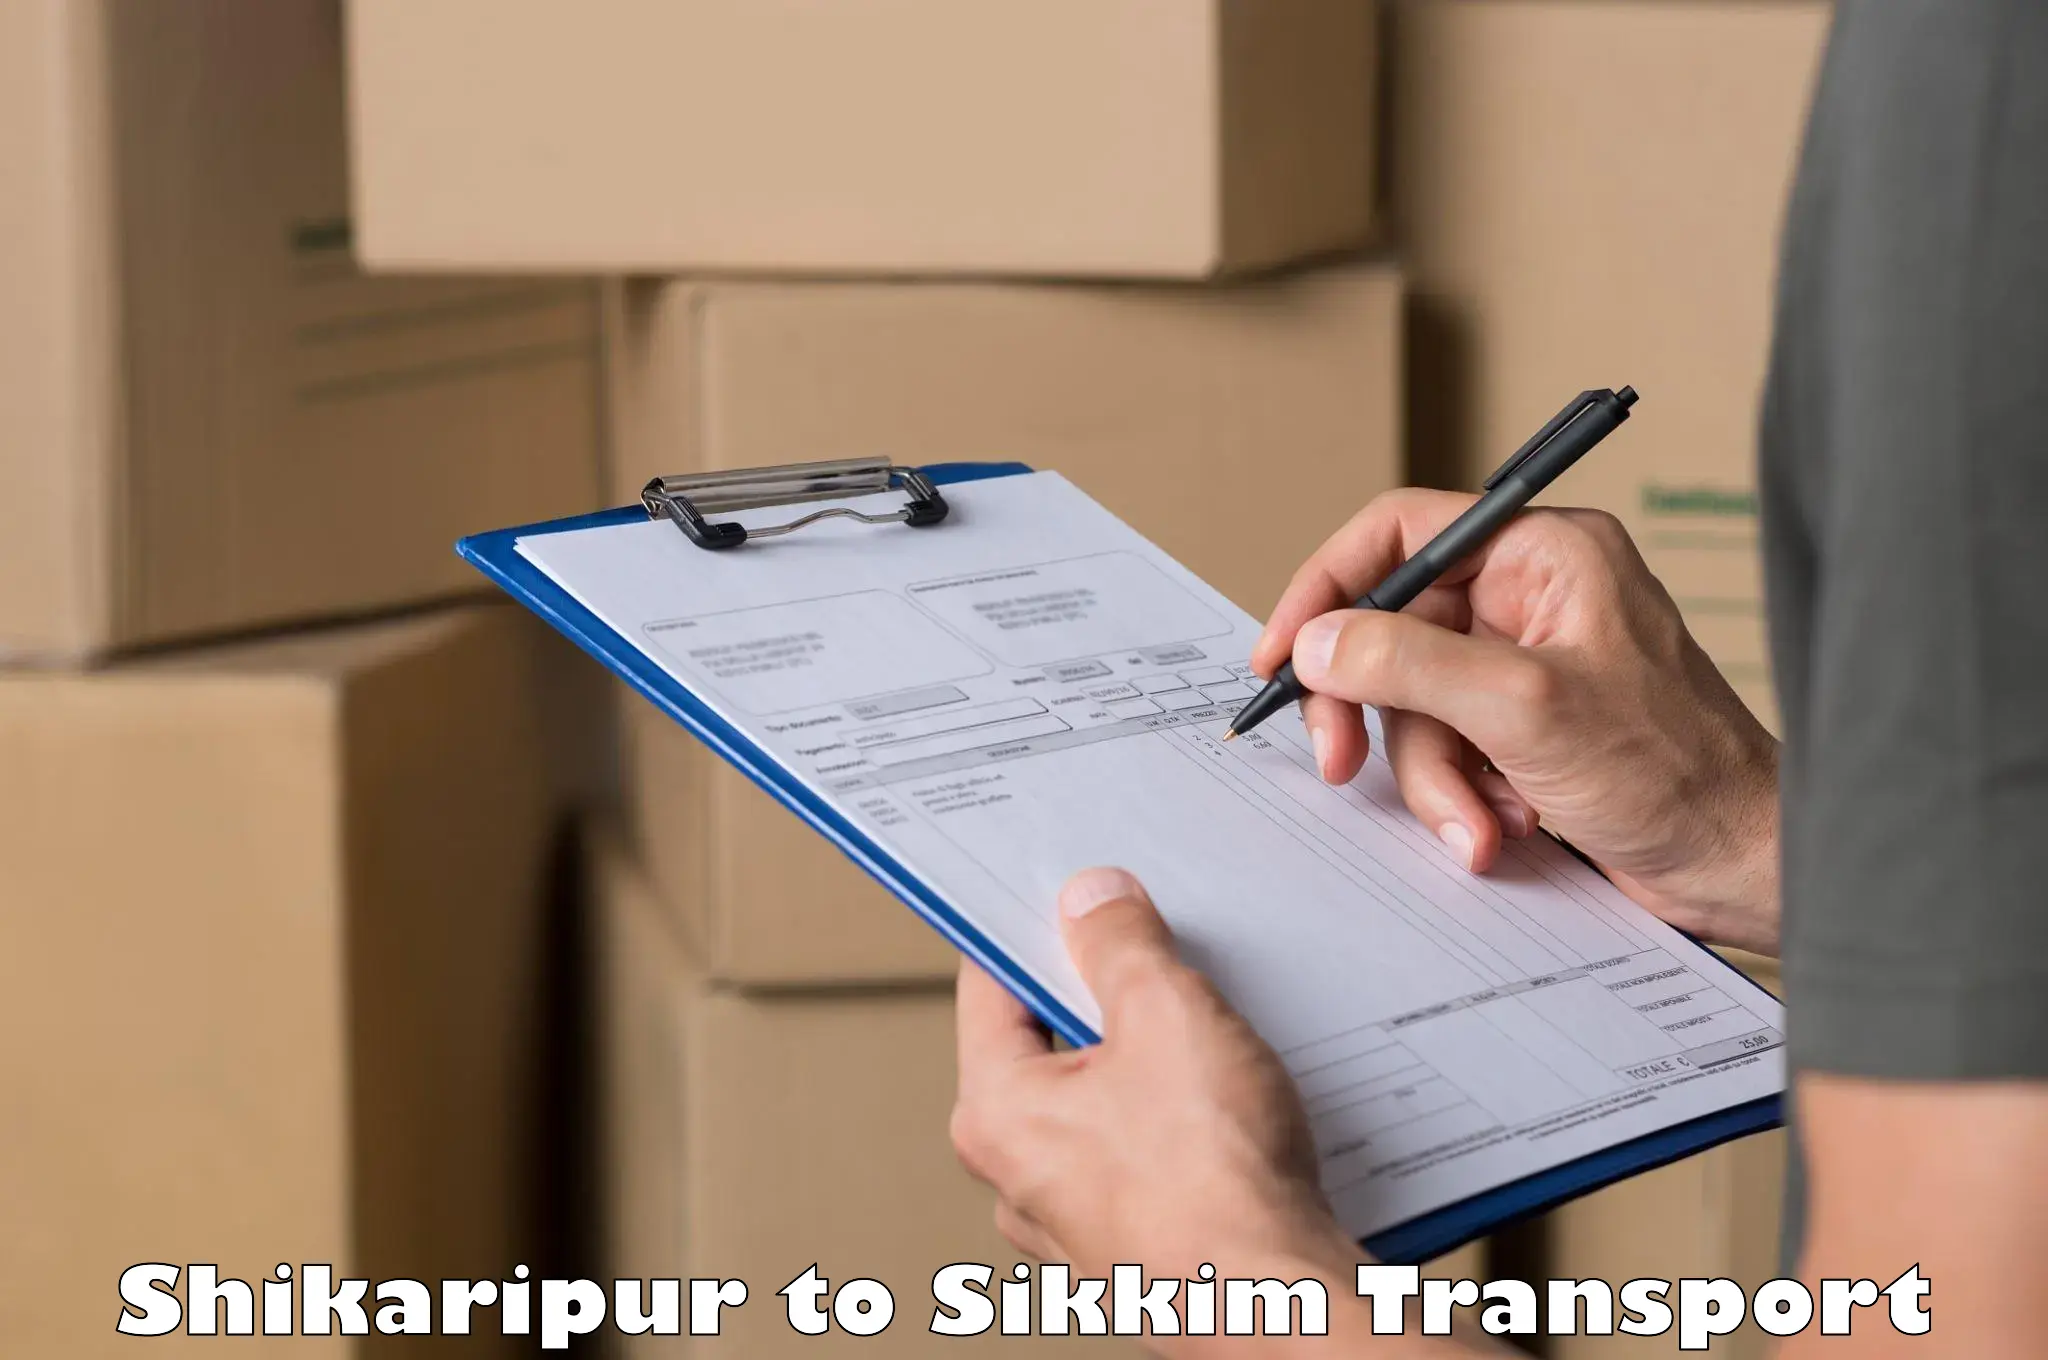 Furniture transport service Shikaripur to Geyzing